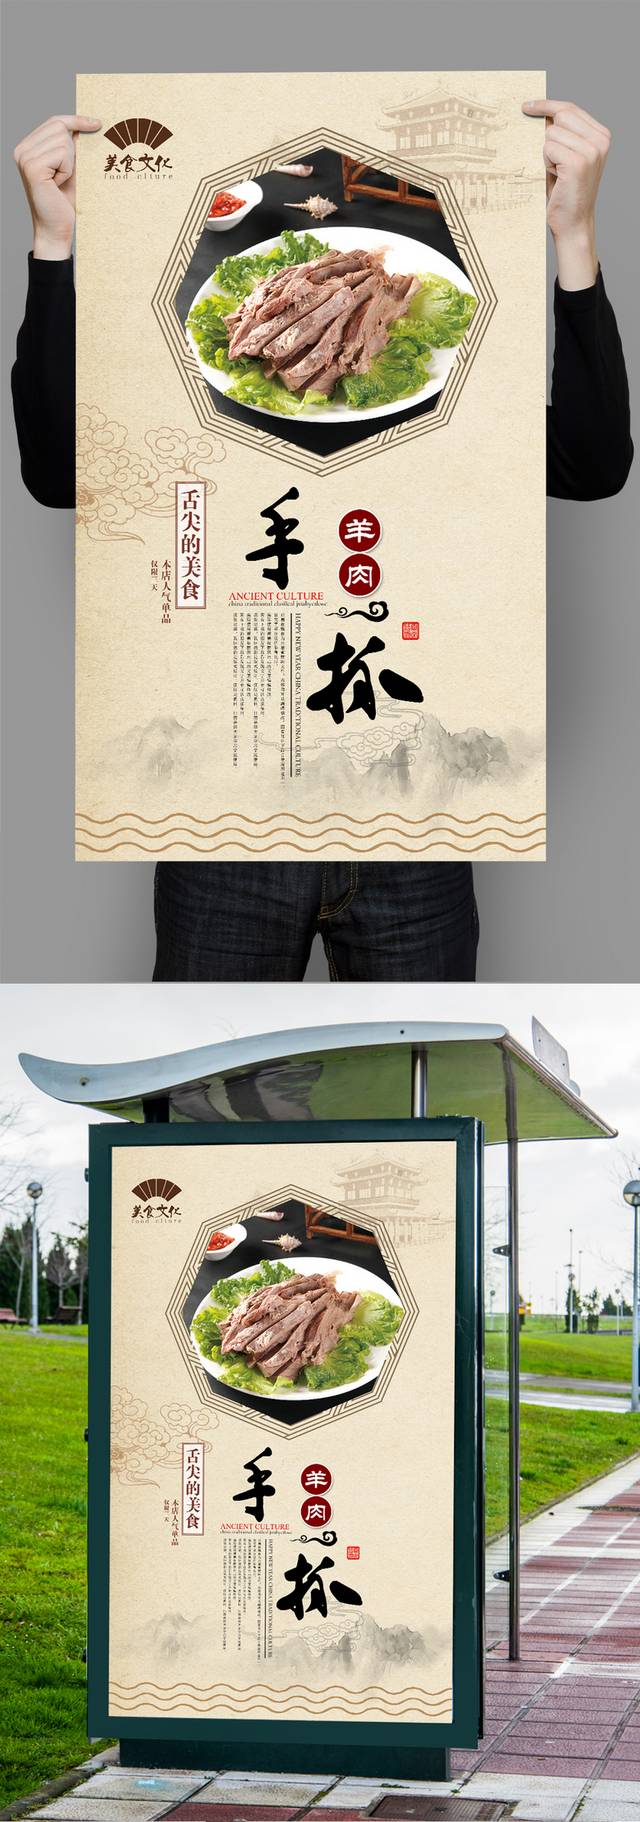 中国风古典手抓羊肉宣传海报设计